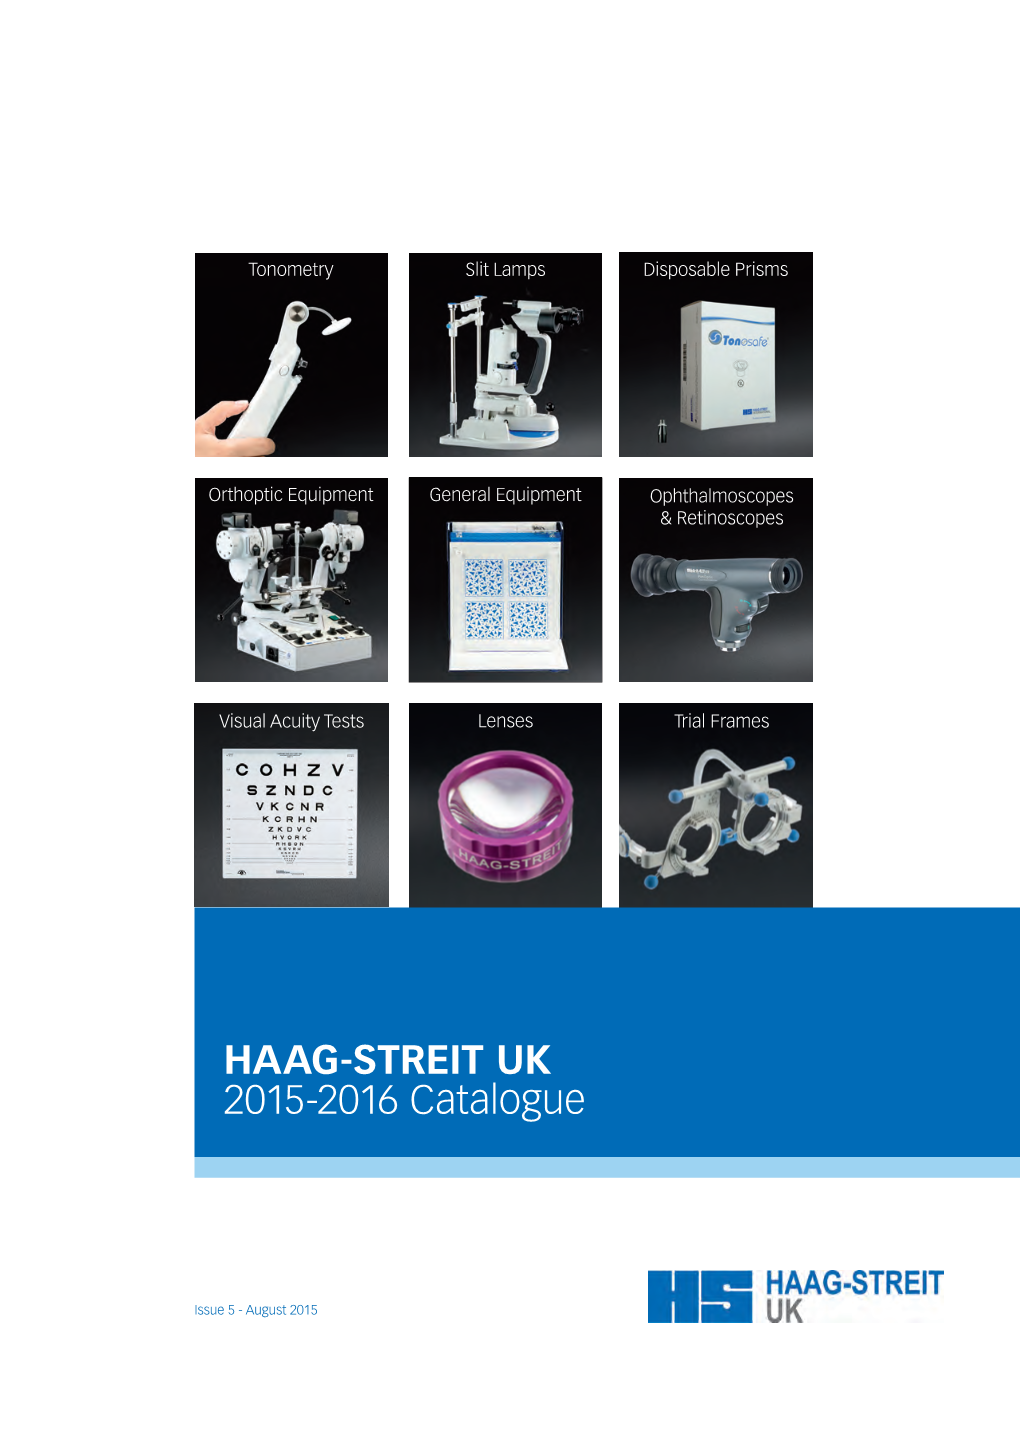 HAAG-STREIT UK 2015-2016 Catalogue